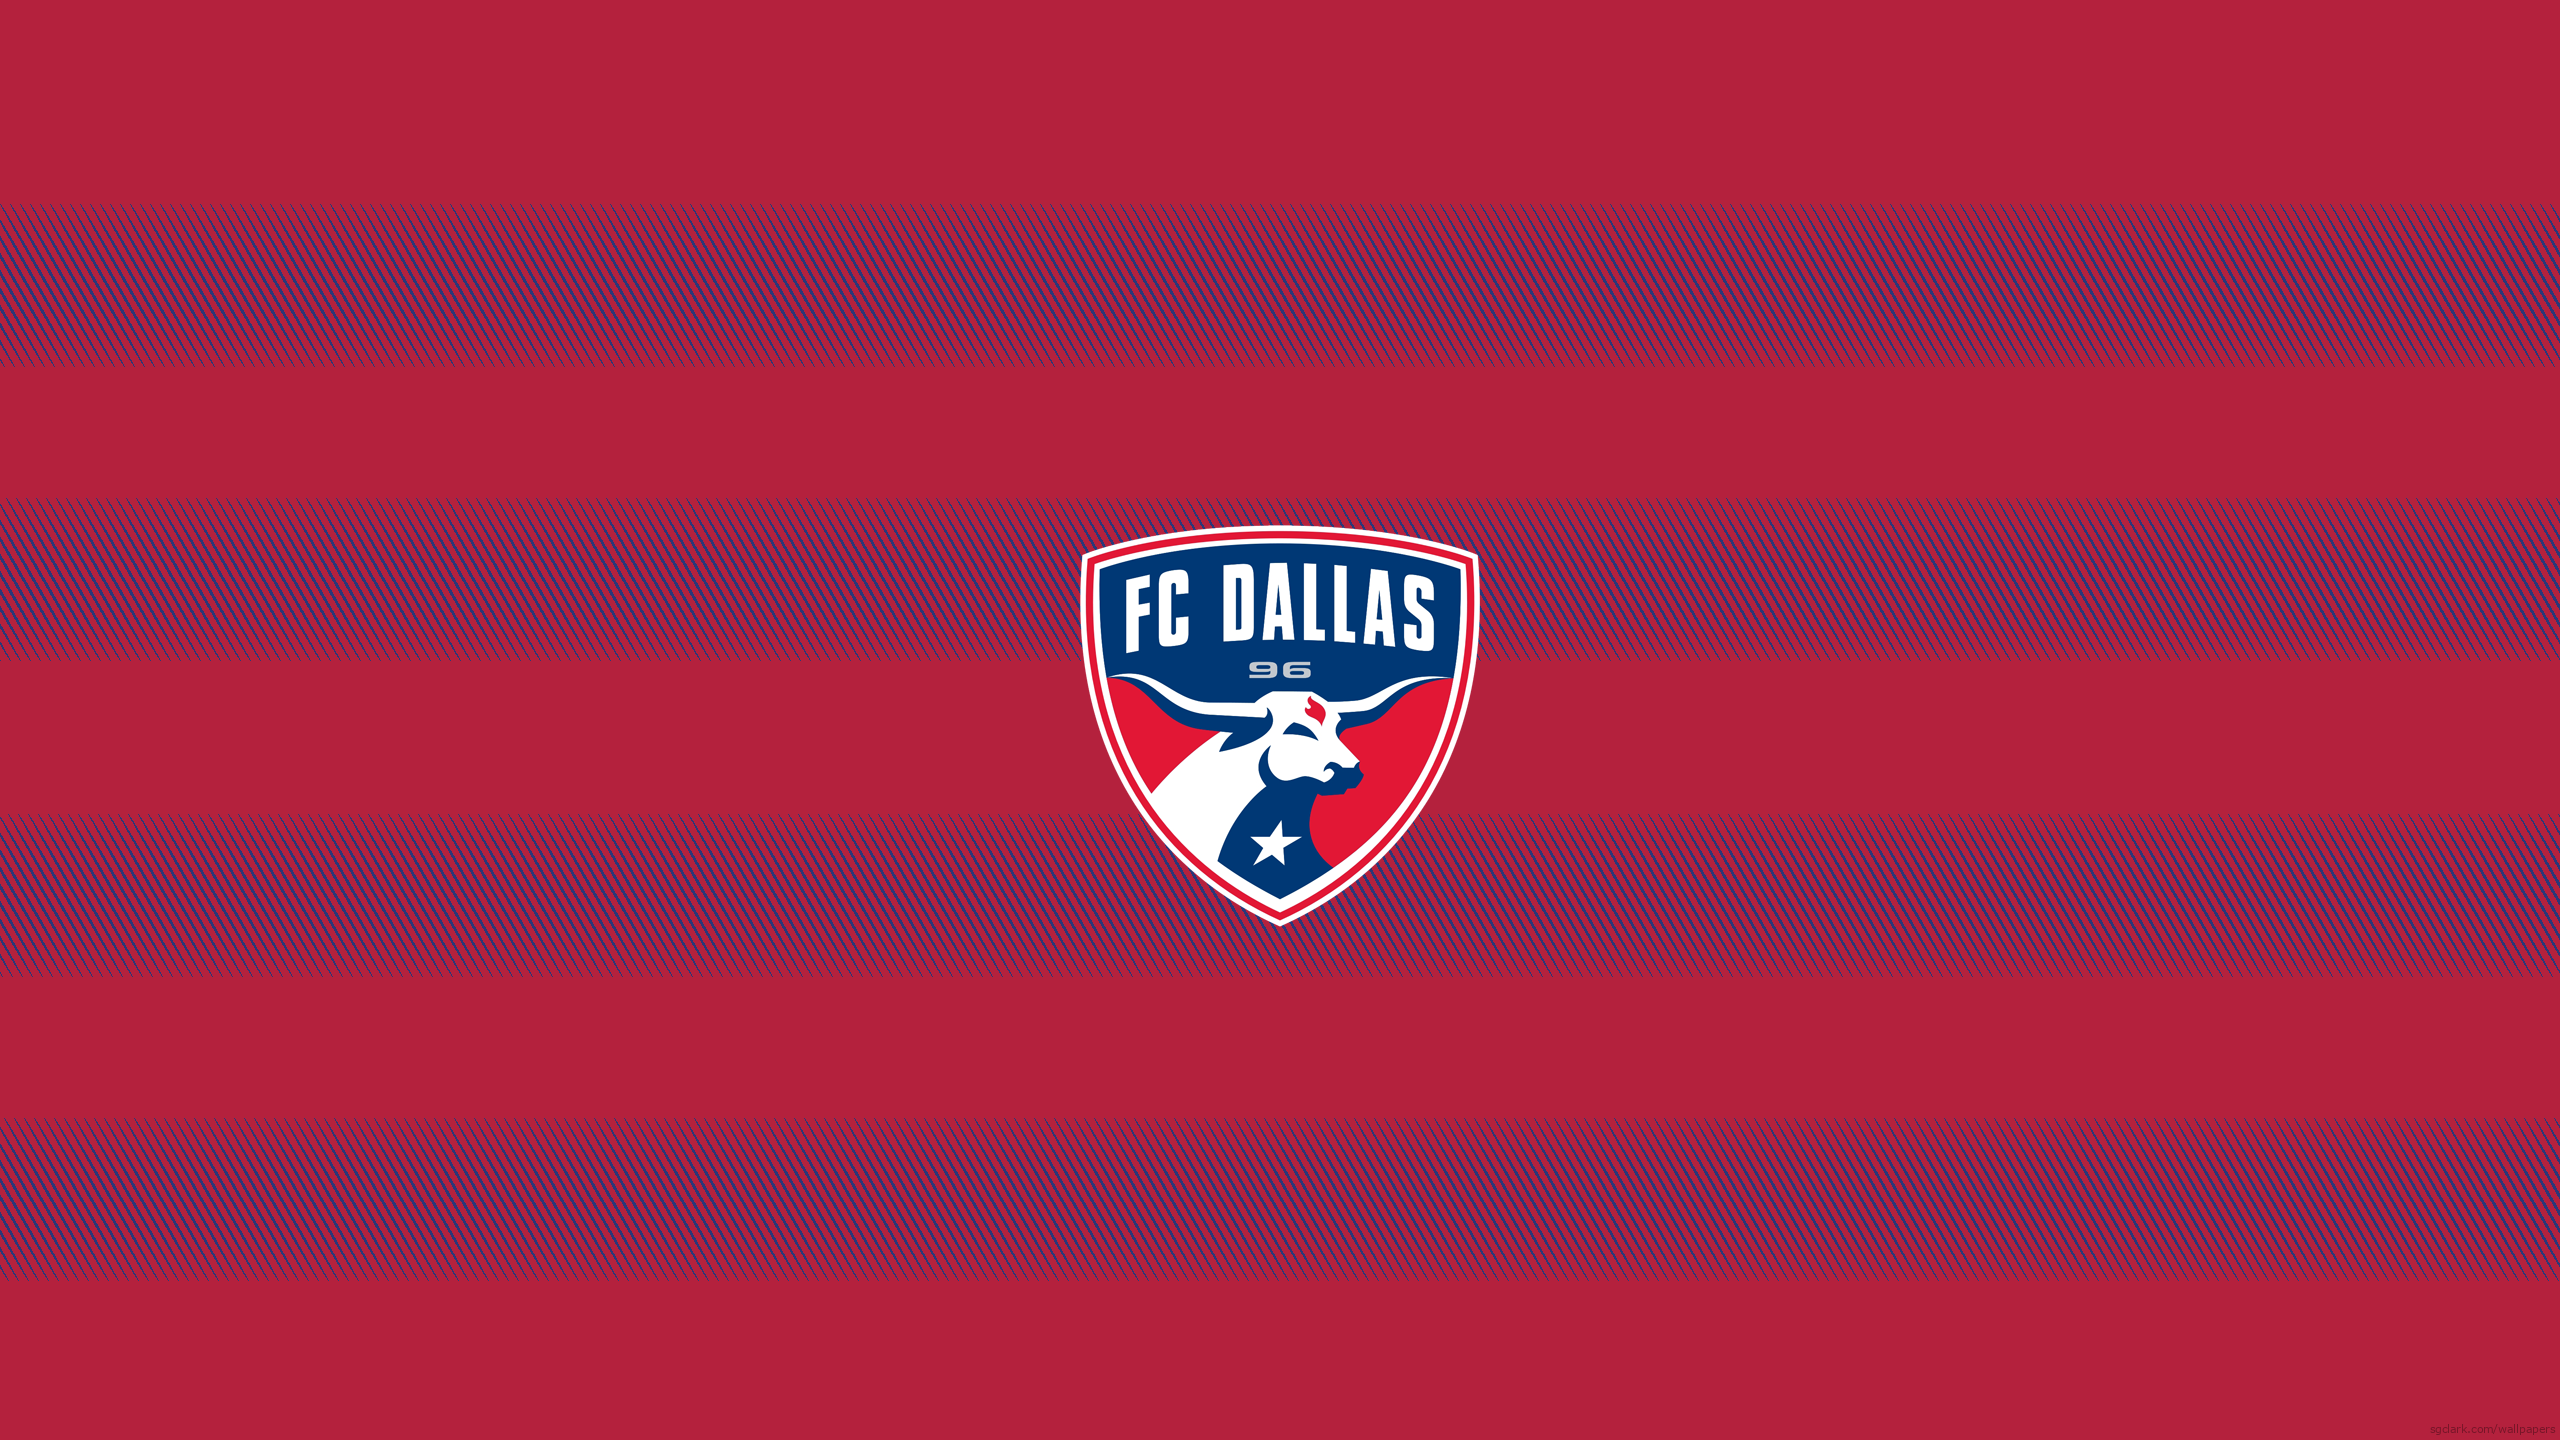 FC Dallas - Major League Soccer - Square Bettor